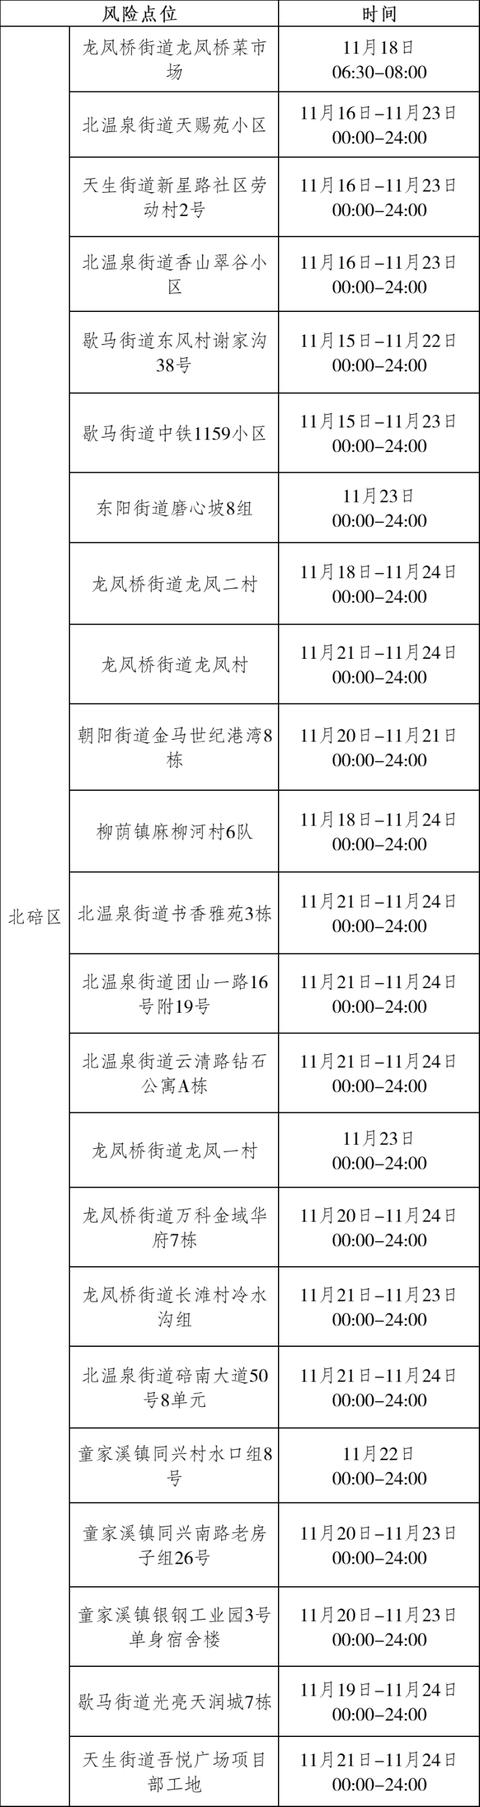 重庆市大渡口区、大渡口区、大渡口区、大渡口区疫情防控通告  第17张